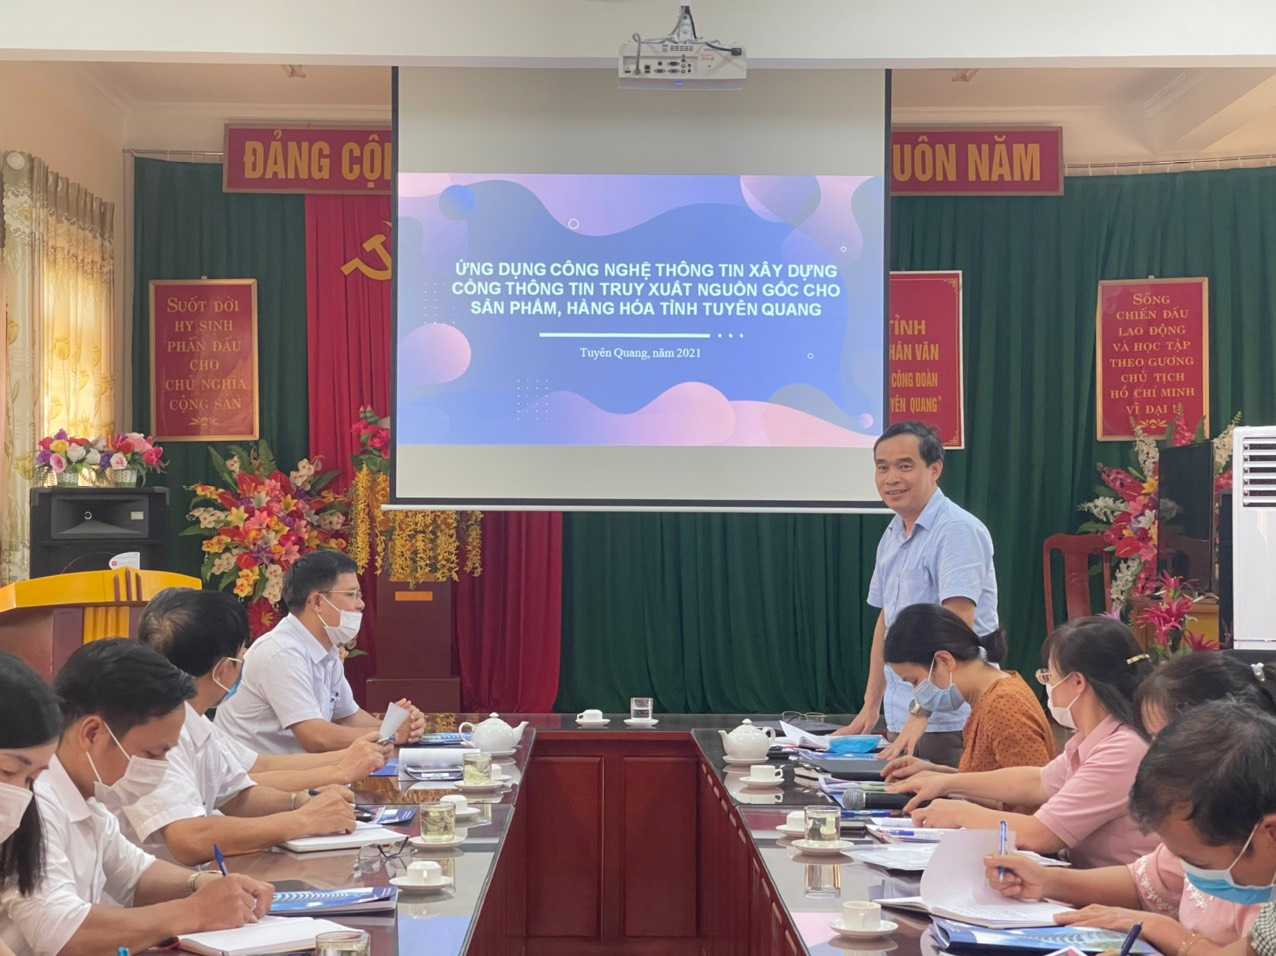 VNPT- Tuyên Quang đề xuất Dự án “Ứng dụng công nghệ thông tin xây dựng cổng thông tin truy xuất nguồn gốc cho sản phẩm, hàng hoá tỉnh Tuyên Quang”.